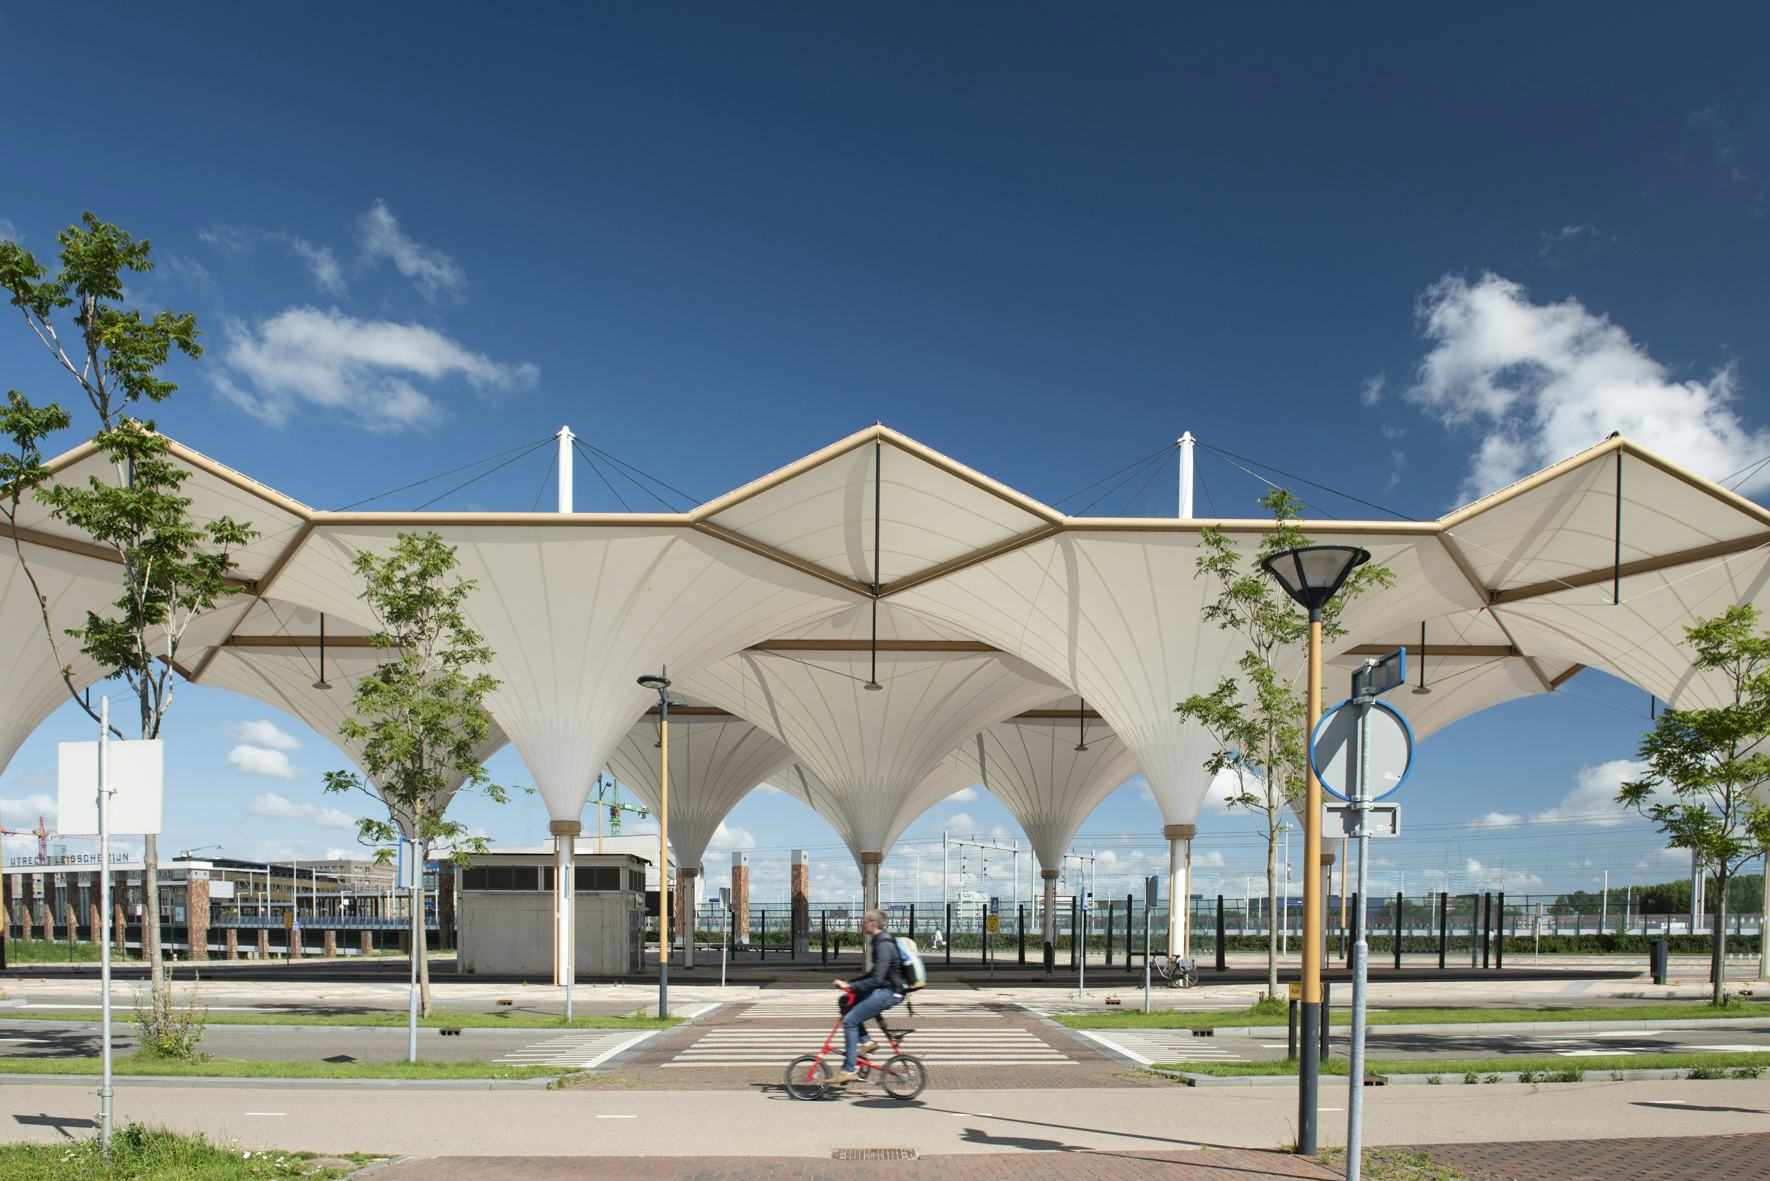 Welk architectuurproject wint de Rietveldprijs 2022?